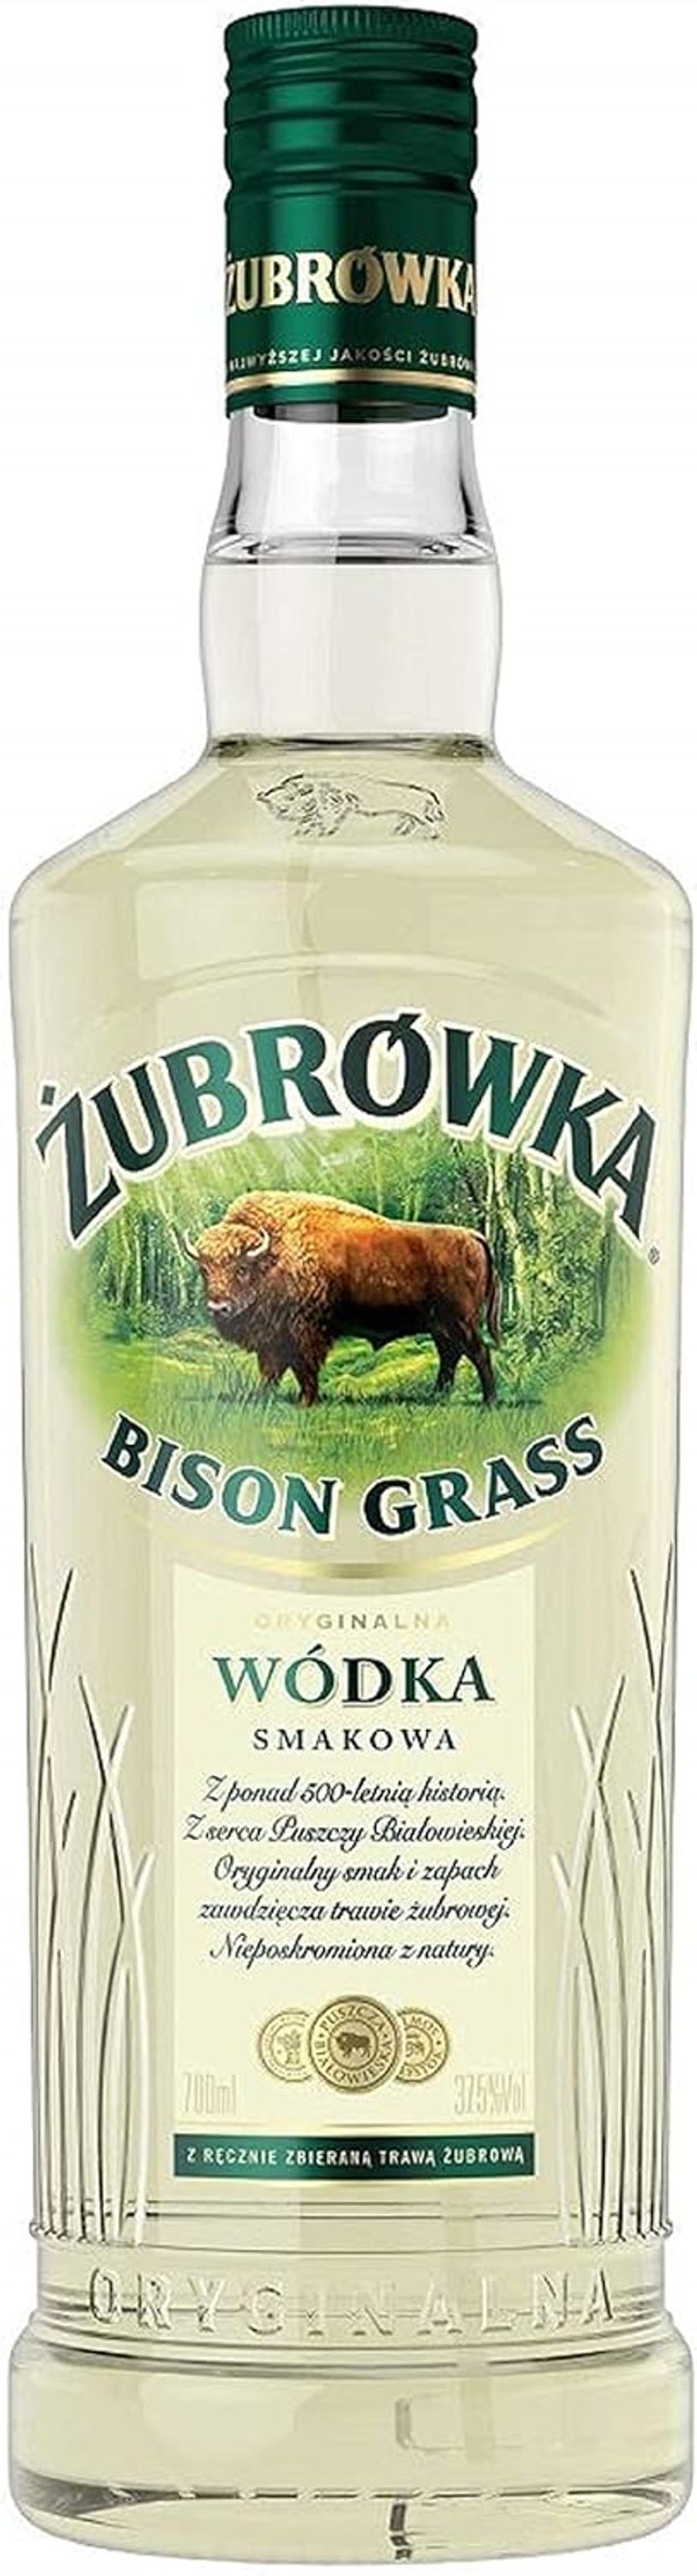 Grasovka Bisongrass Vodka 0,7l, alc. 38 Vol.-%, Wodka Polen